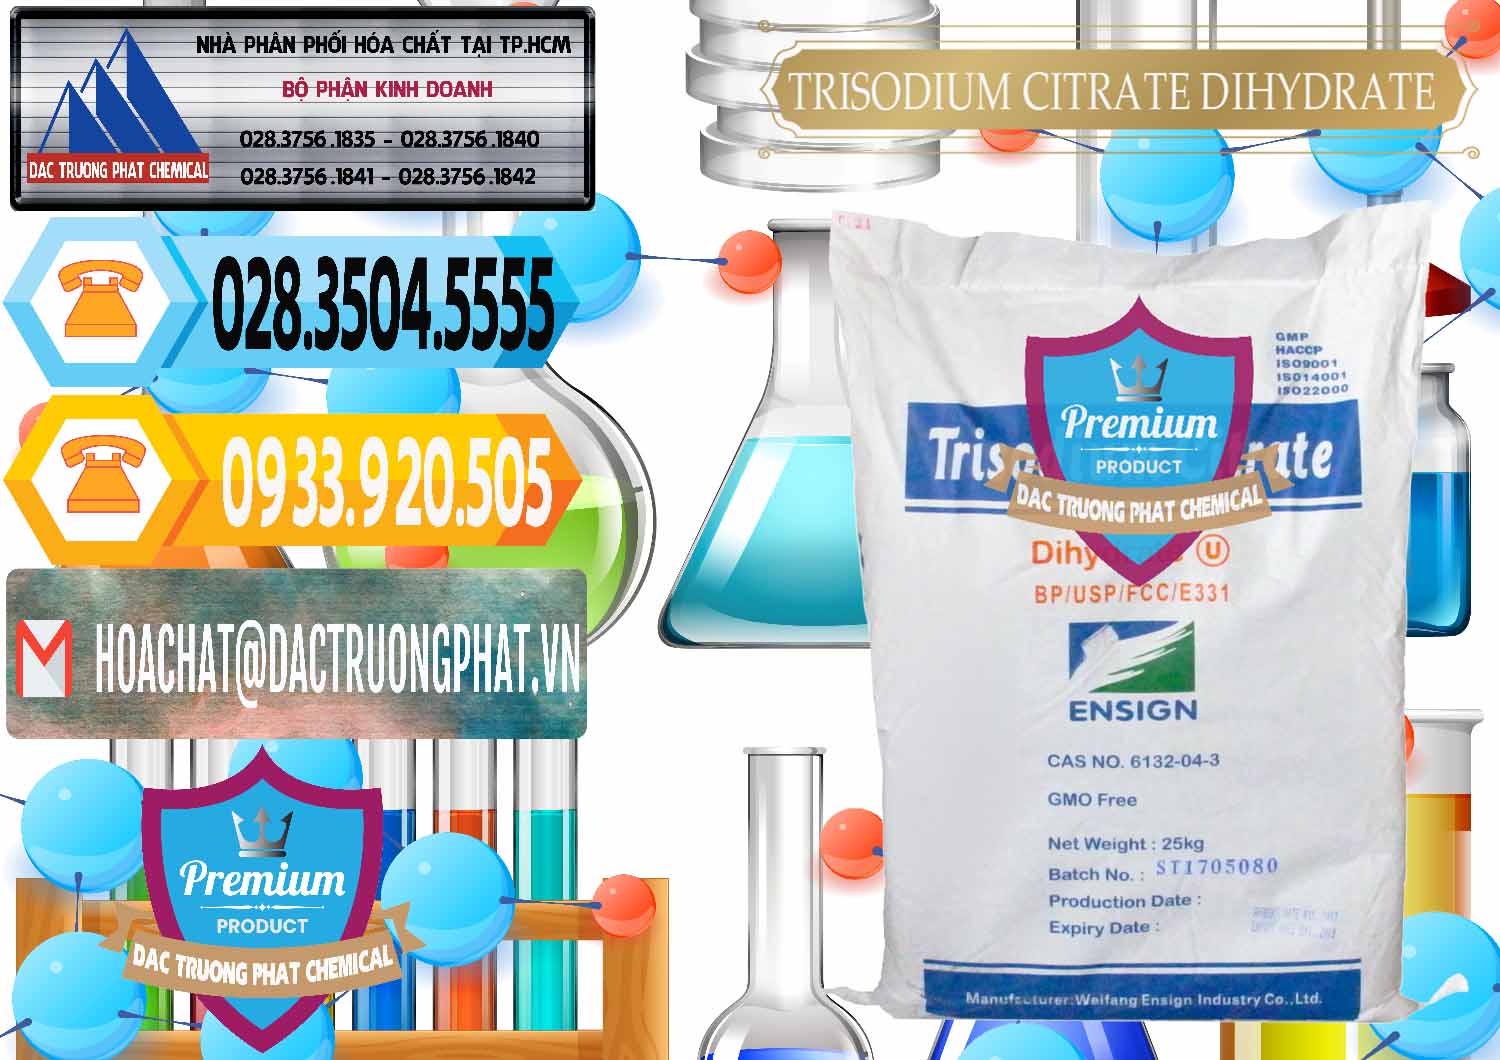 Nơi chuyên cung cấp & bán Trisodium Citrate Dihydrate - Na3C6H5O7 Weifang Trung Quốc China - 0324 - Phân phối - cung cấp hóa chất tại TP.HCM - hoachattayrua.net